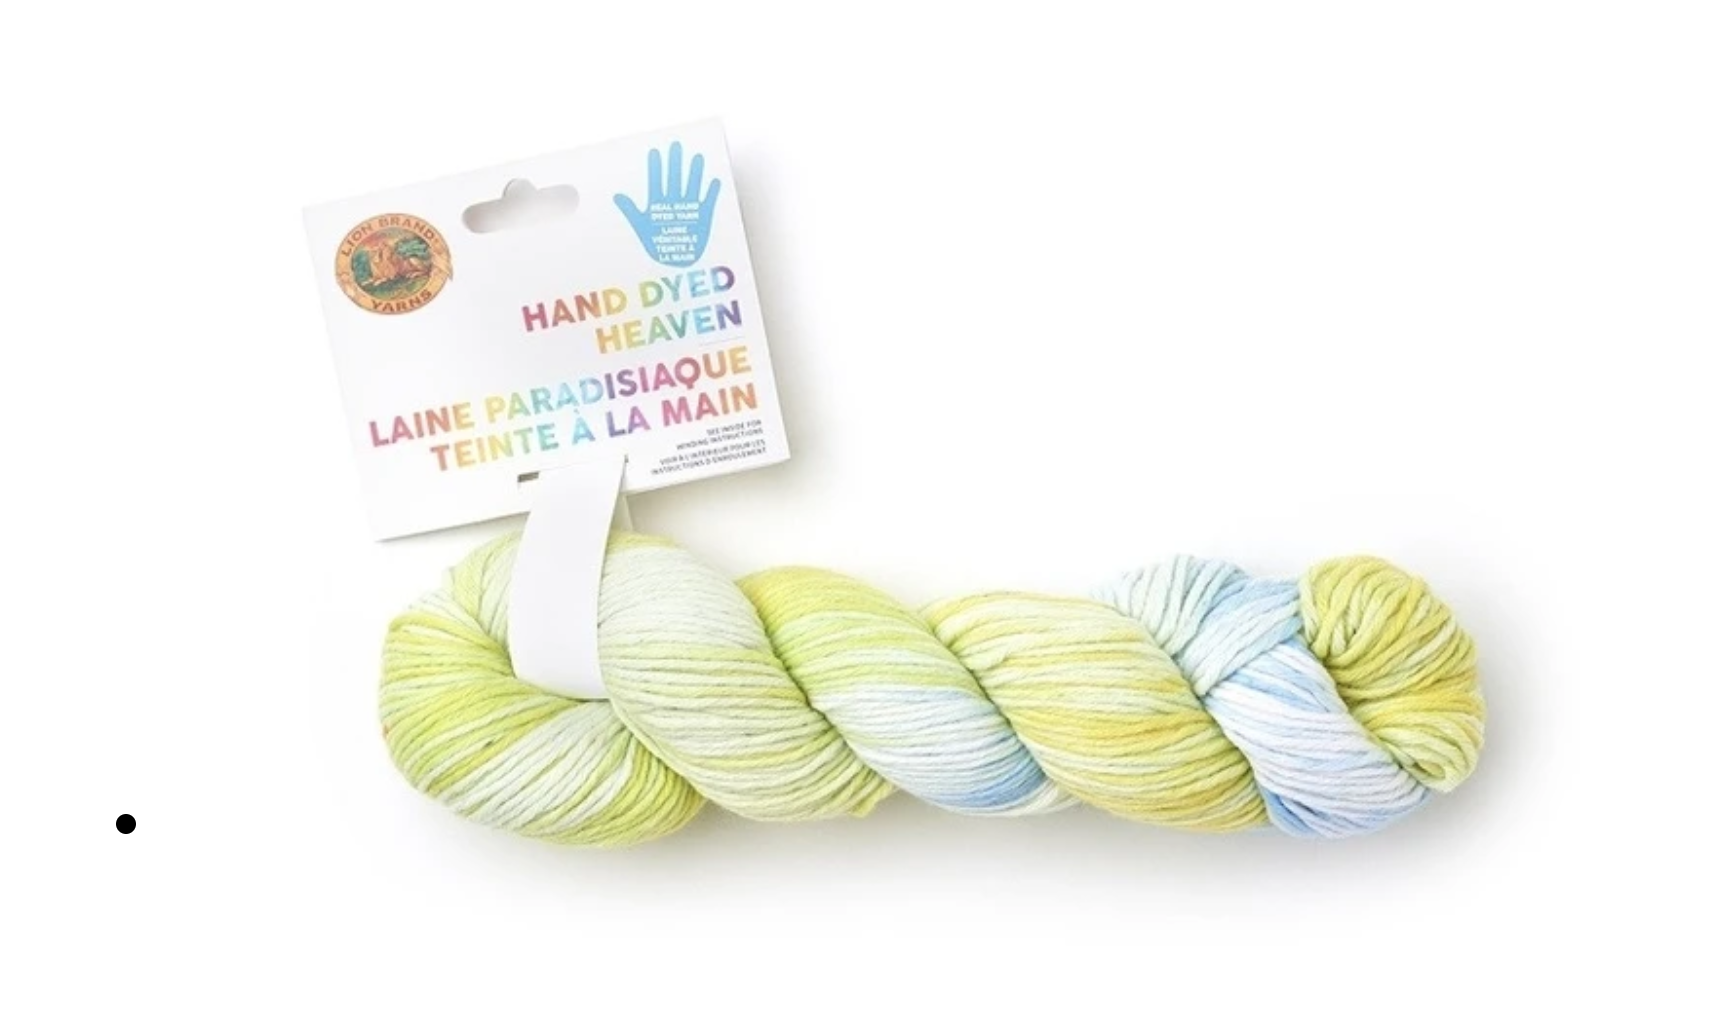 Yarn dyeing Coboo from @Lion Brand Yarn 🧶 #madeinhawaiiwithaloha #cro